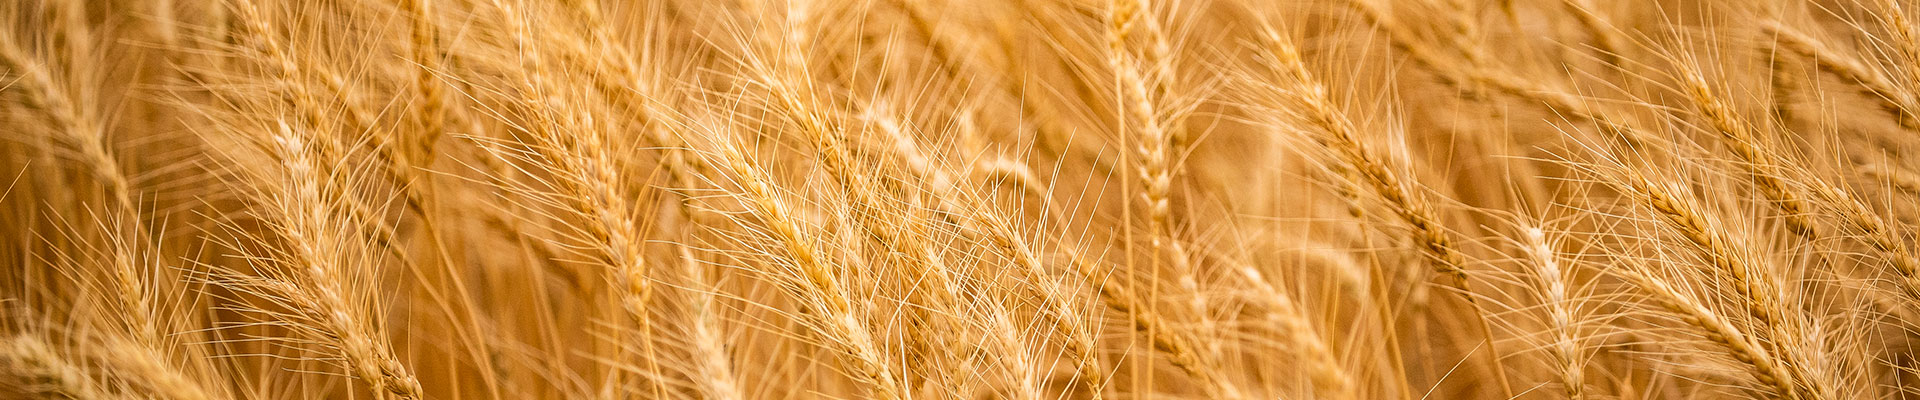 Wheat stalks growing in a field